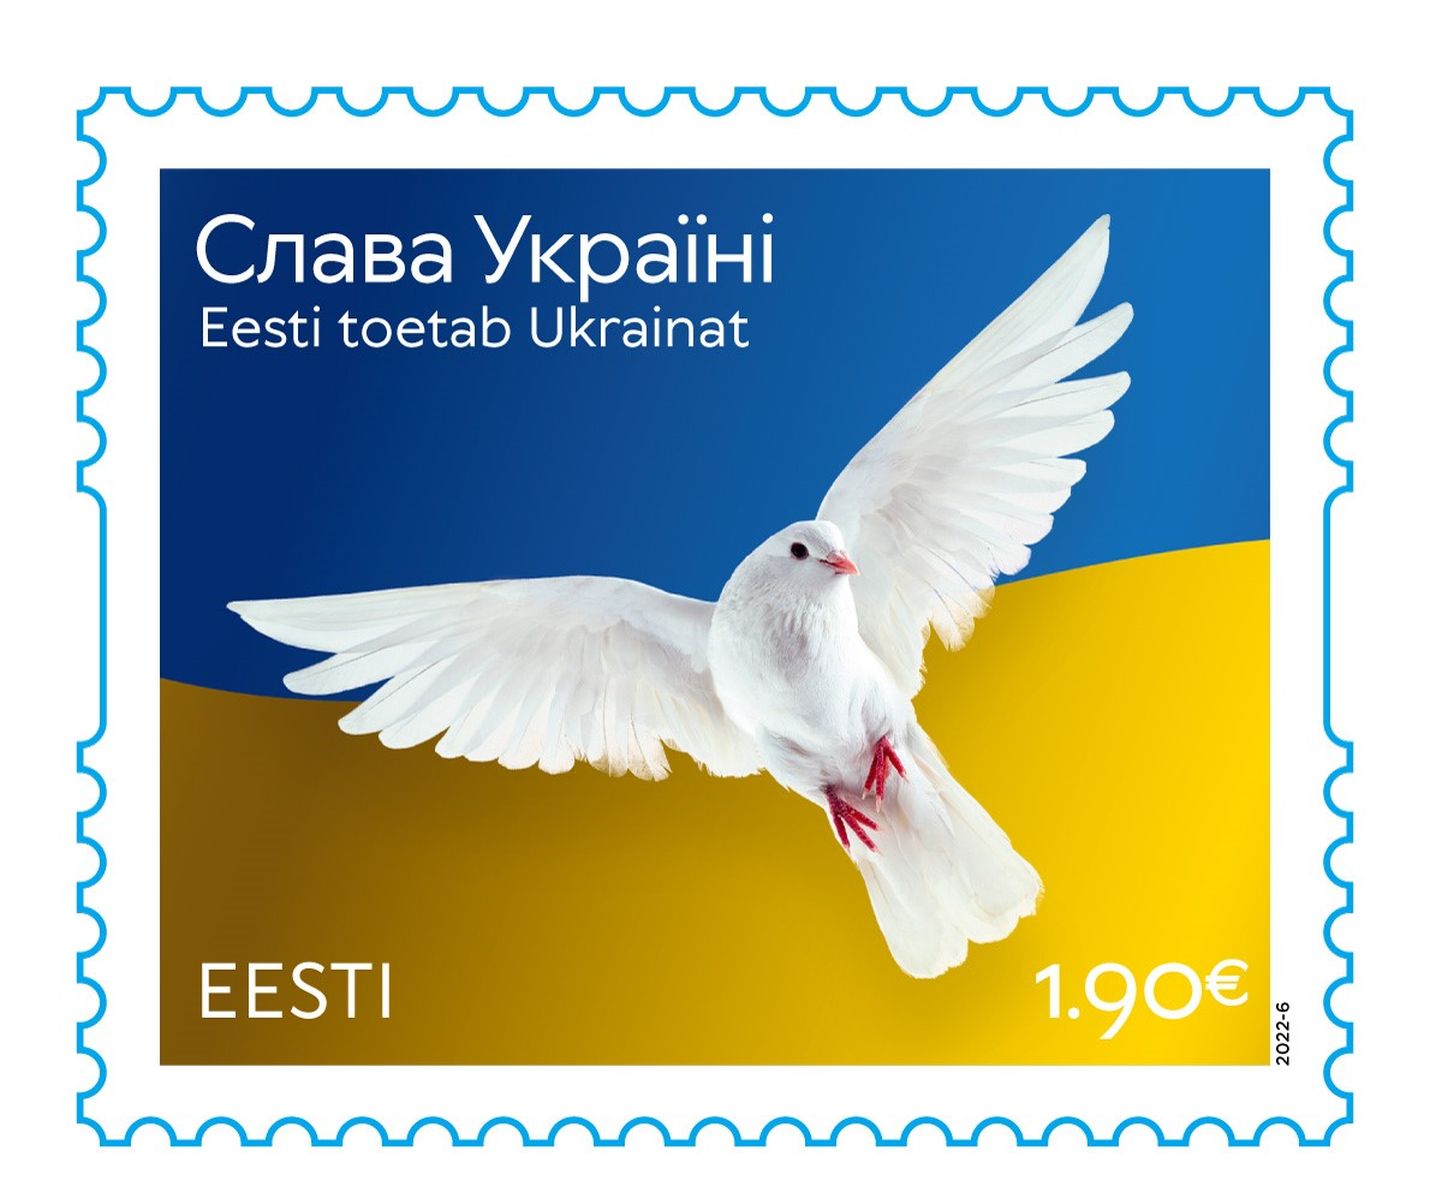 Ukraina toetuseks ilmub postmark.